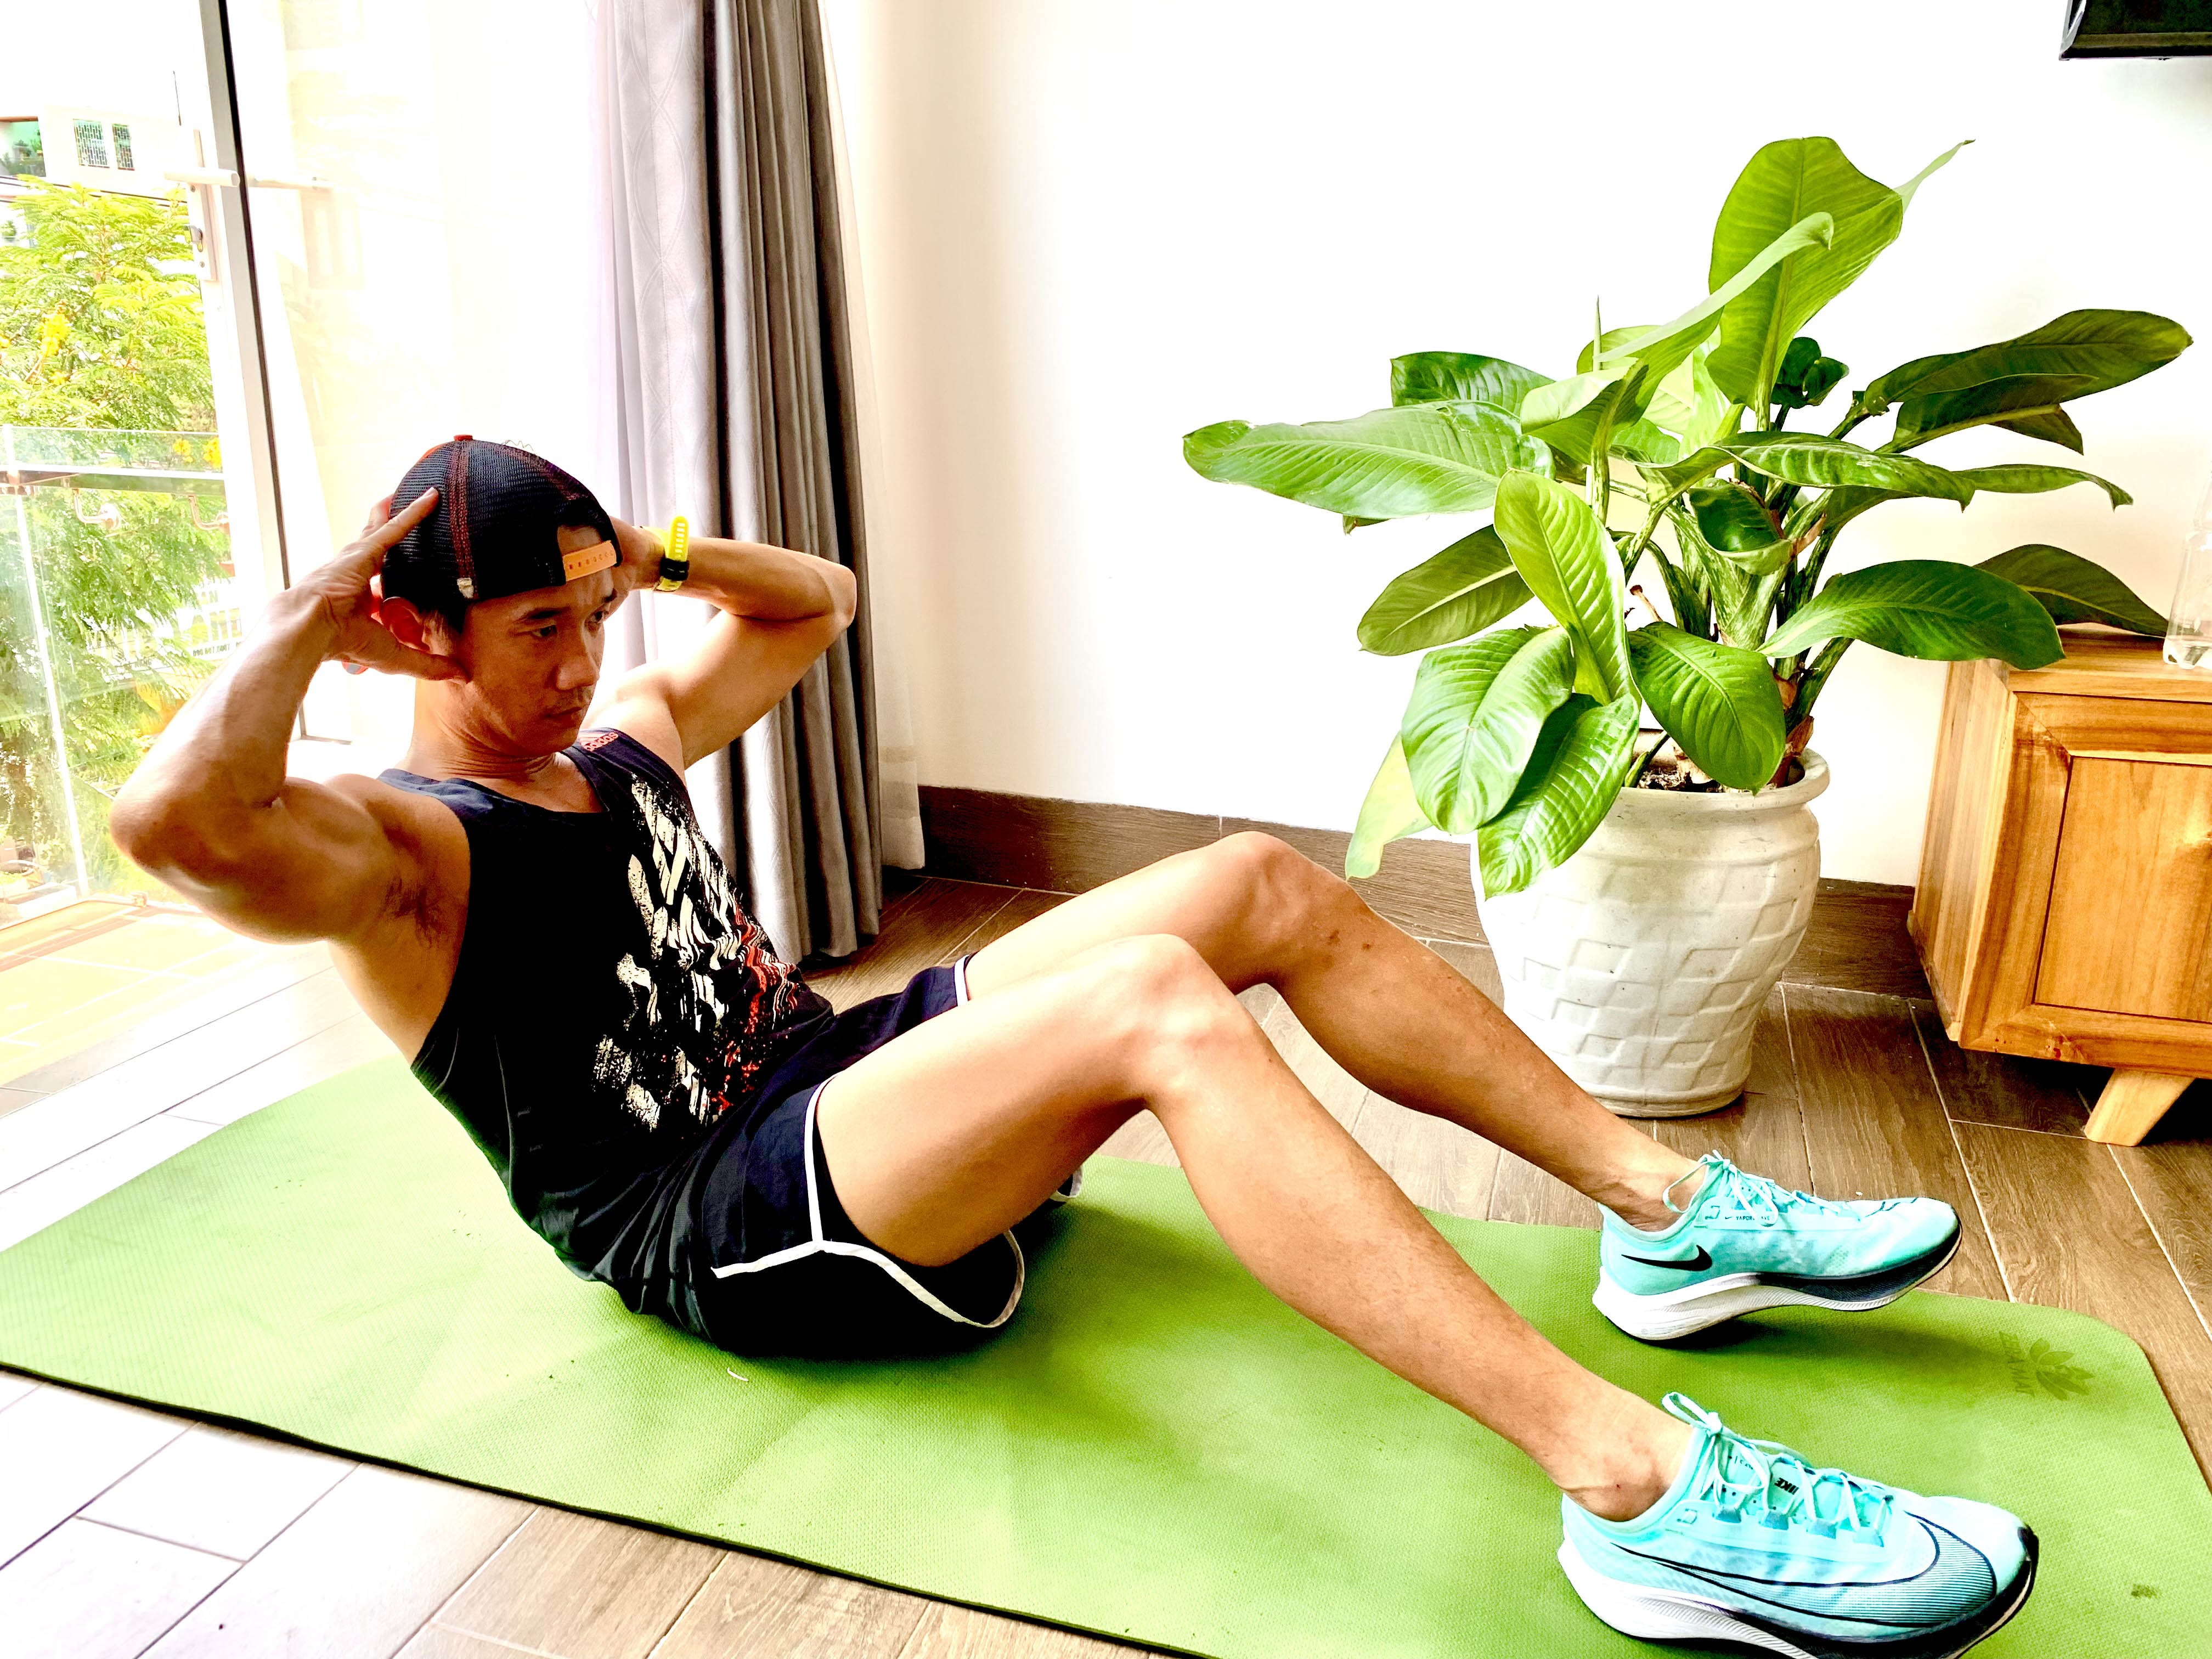 Anh Võ Quốc Tuân (ảnh), một trong những thành viên của Danang Triathlon, vẫn duy trì tập luyện tại nhà như một thói quen vào những ngày Đà Nẵng thực hiện giãn cách toàn thành phố. Ảnh: Nhân vật cung cấp